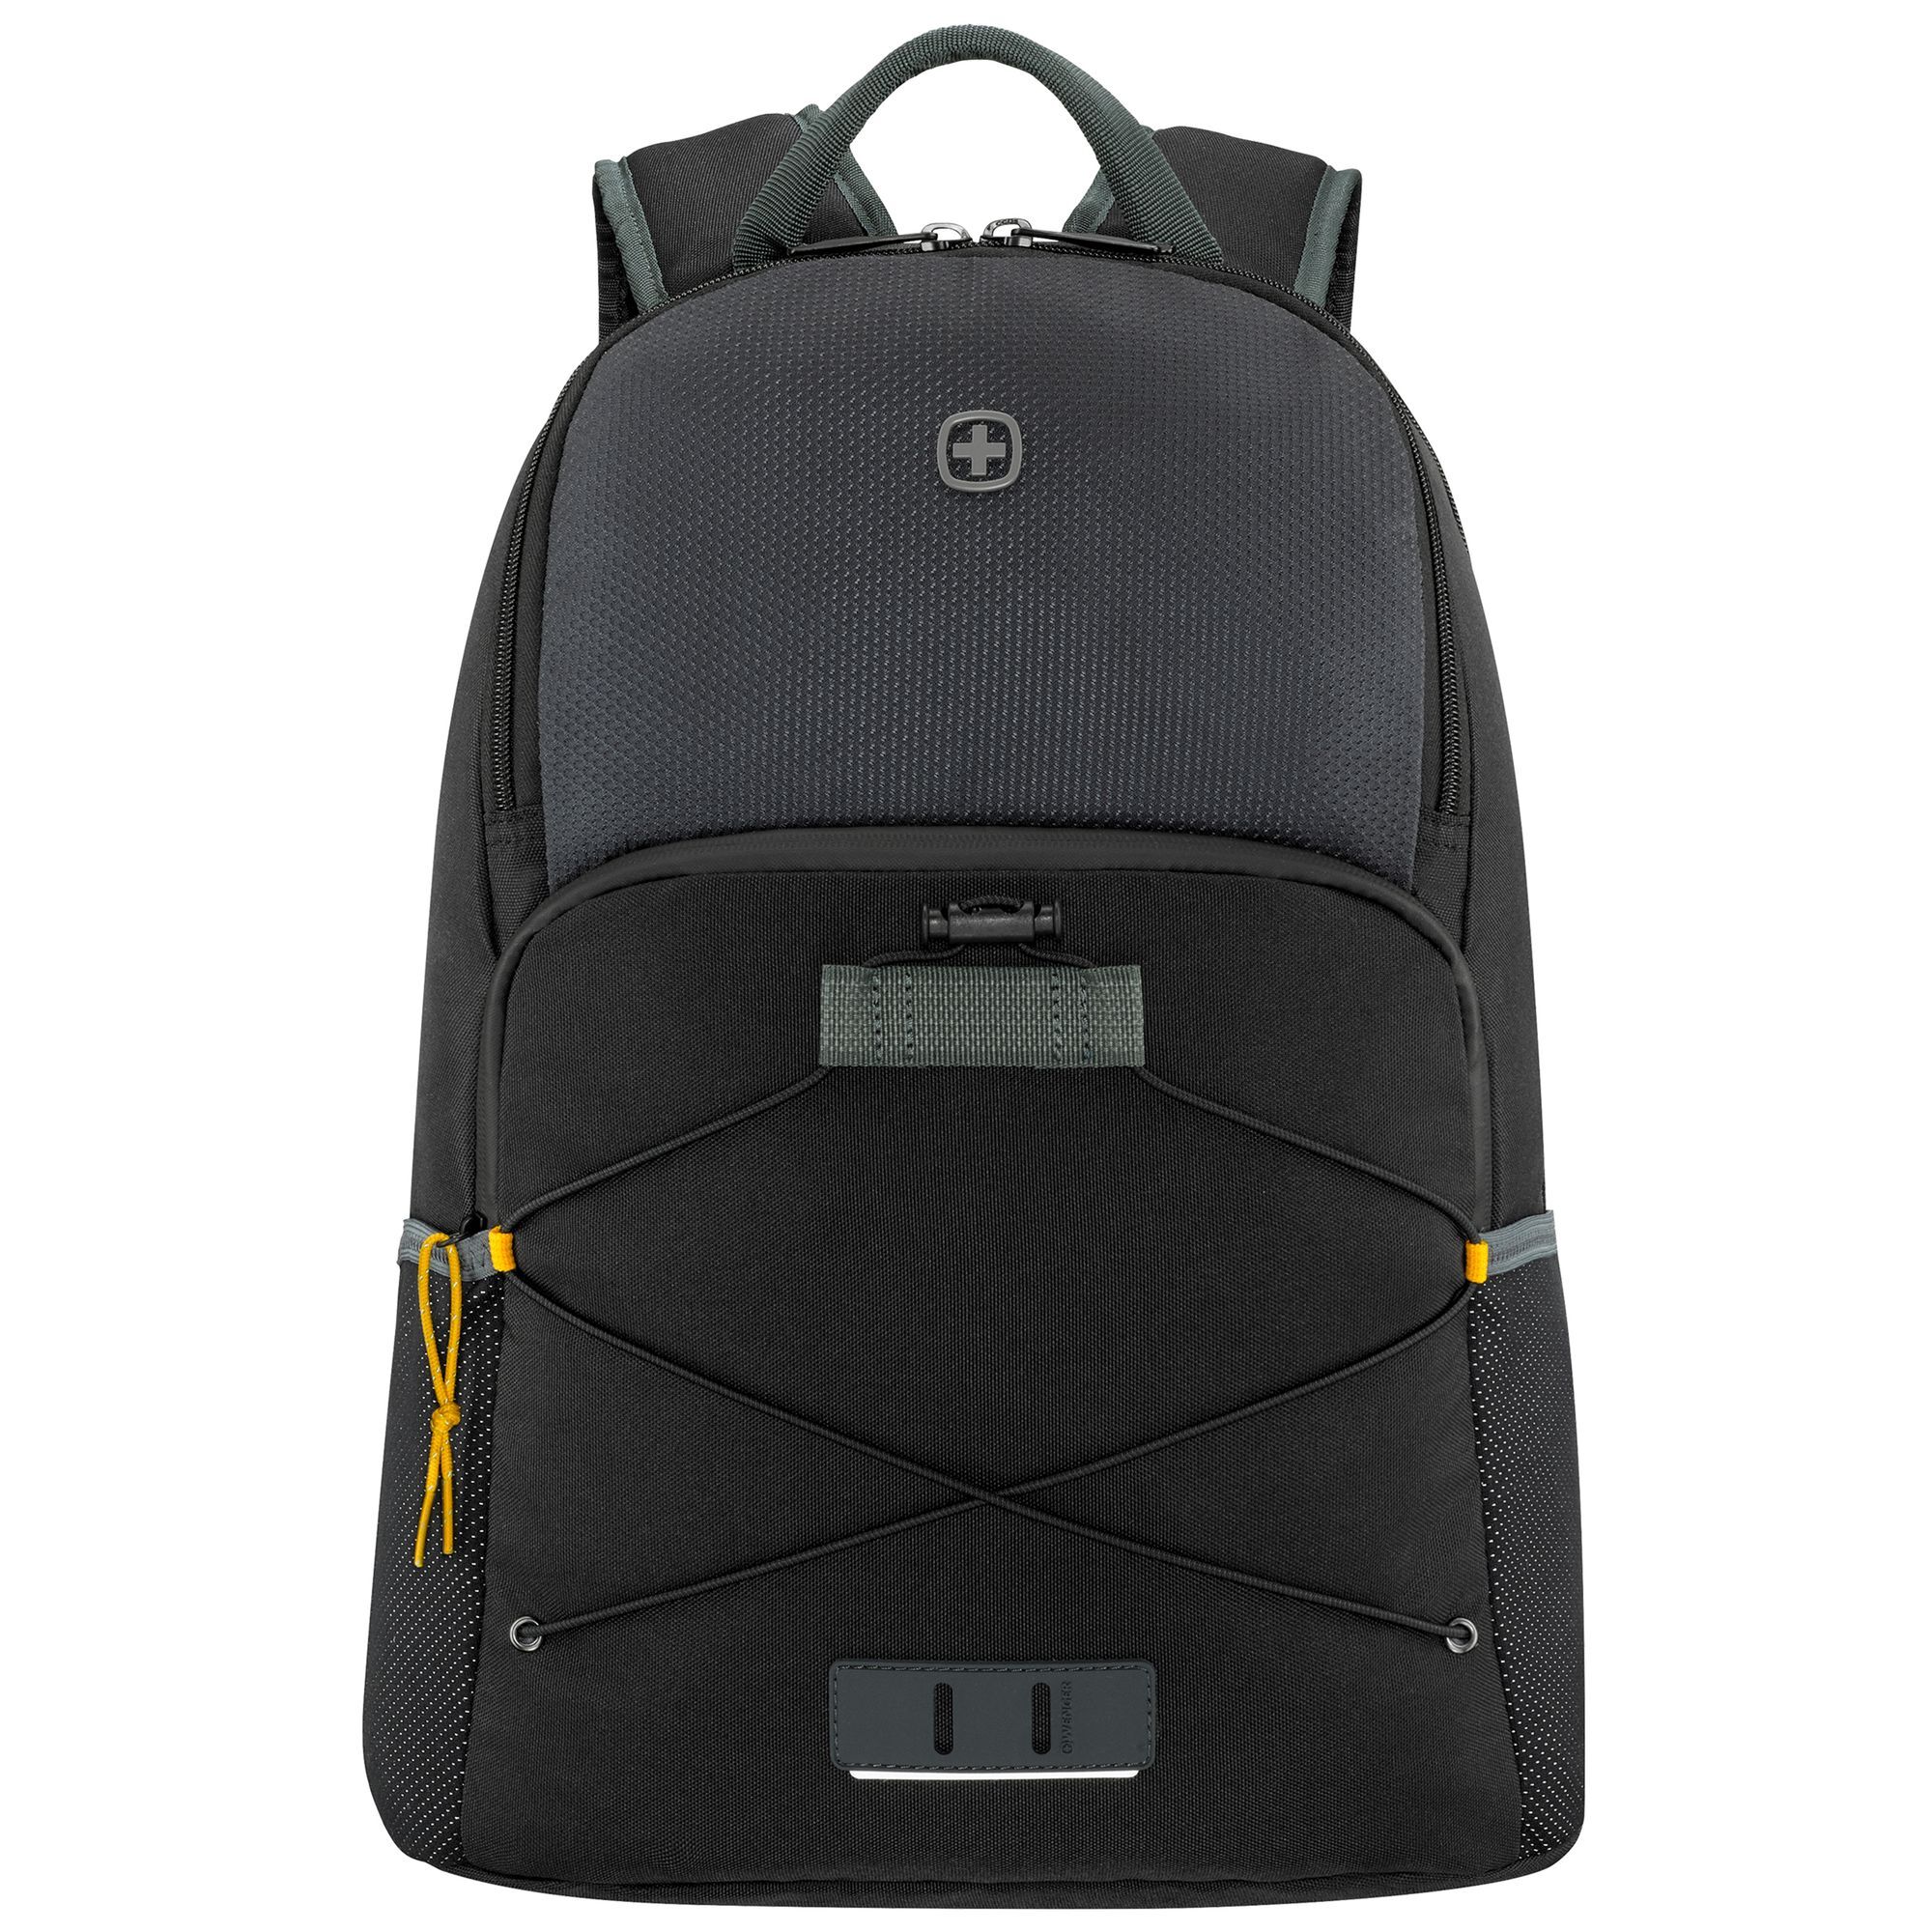 Рюкзак Wenger Trayl 45 cm Laptopfach, цвет gravity black рюкзак wenger crango 46 cm laptopfach цвет gravity black